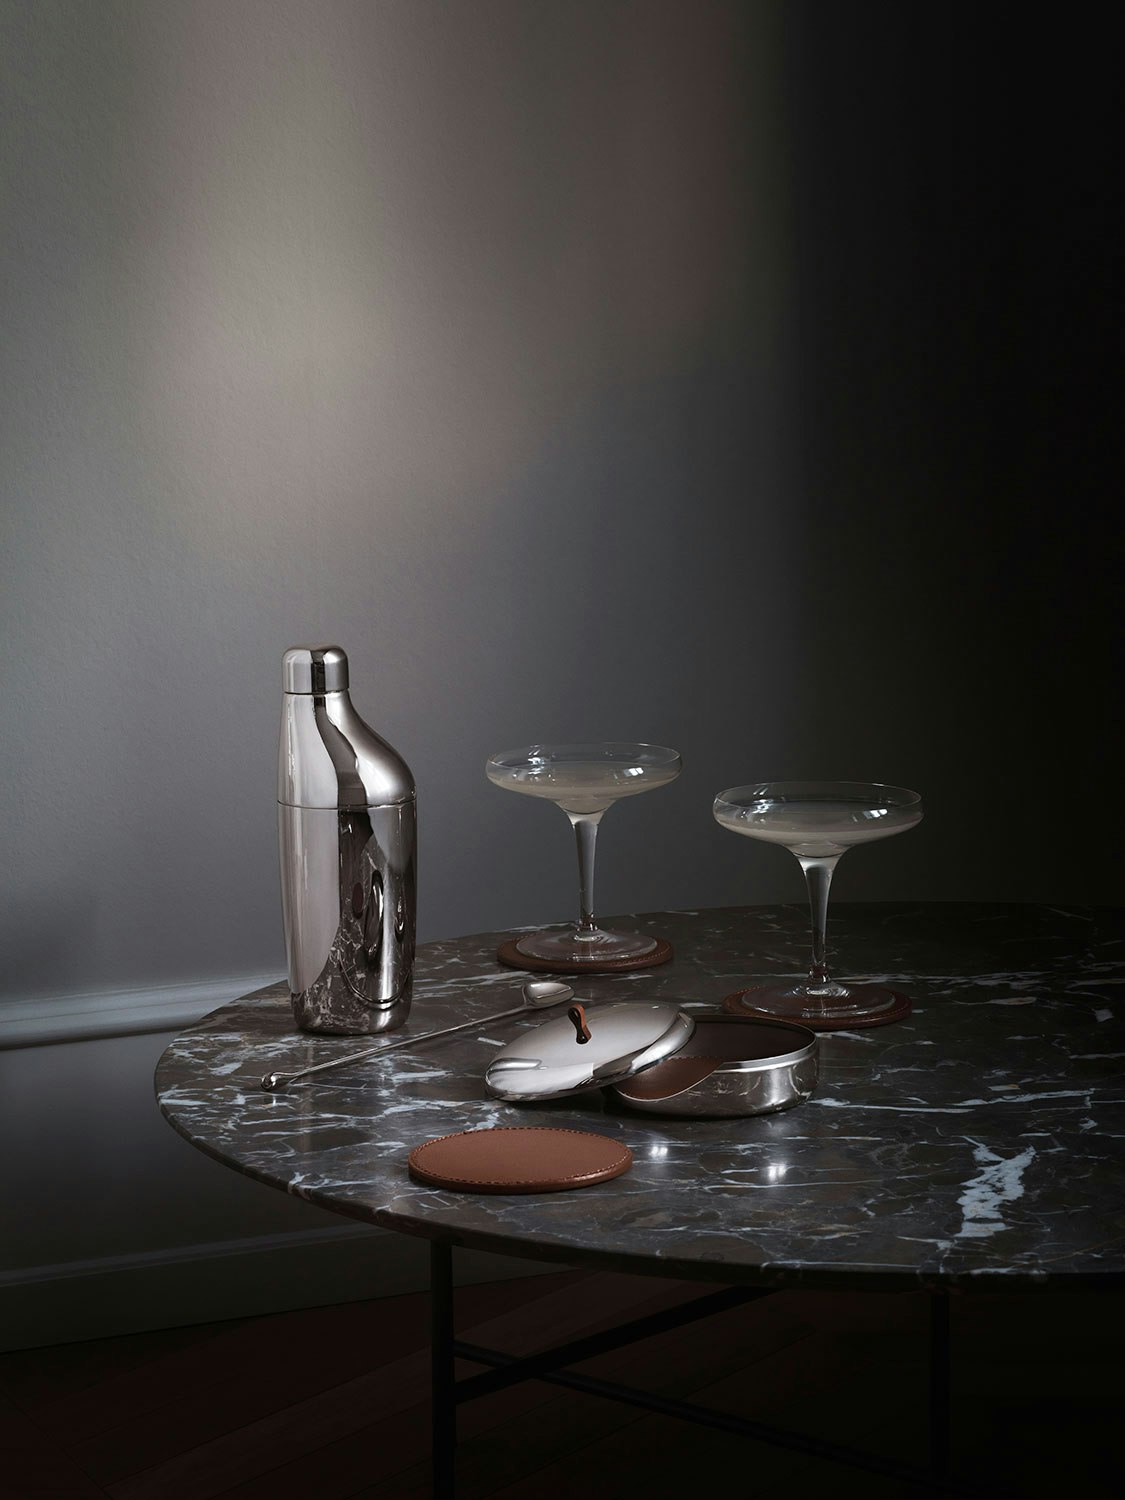 https://royaldesign.com/image/2/georg-jensen-sky-gift-set-cocktail-shaker-spoon-jigger-2